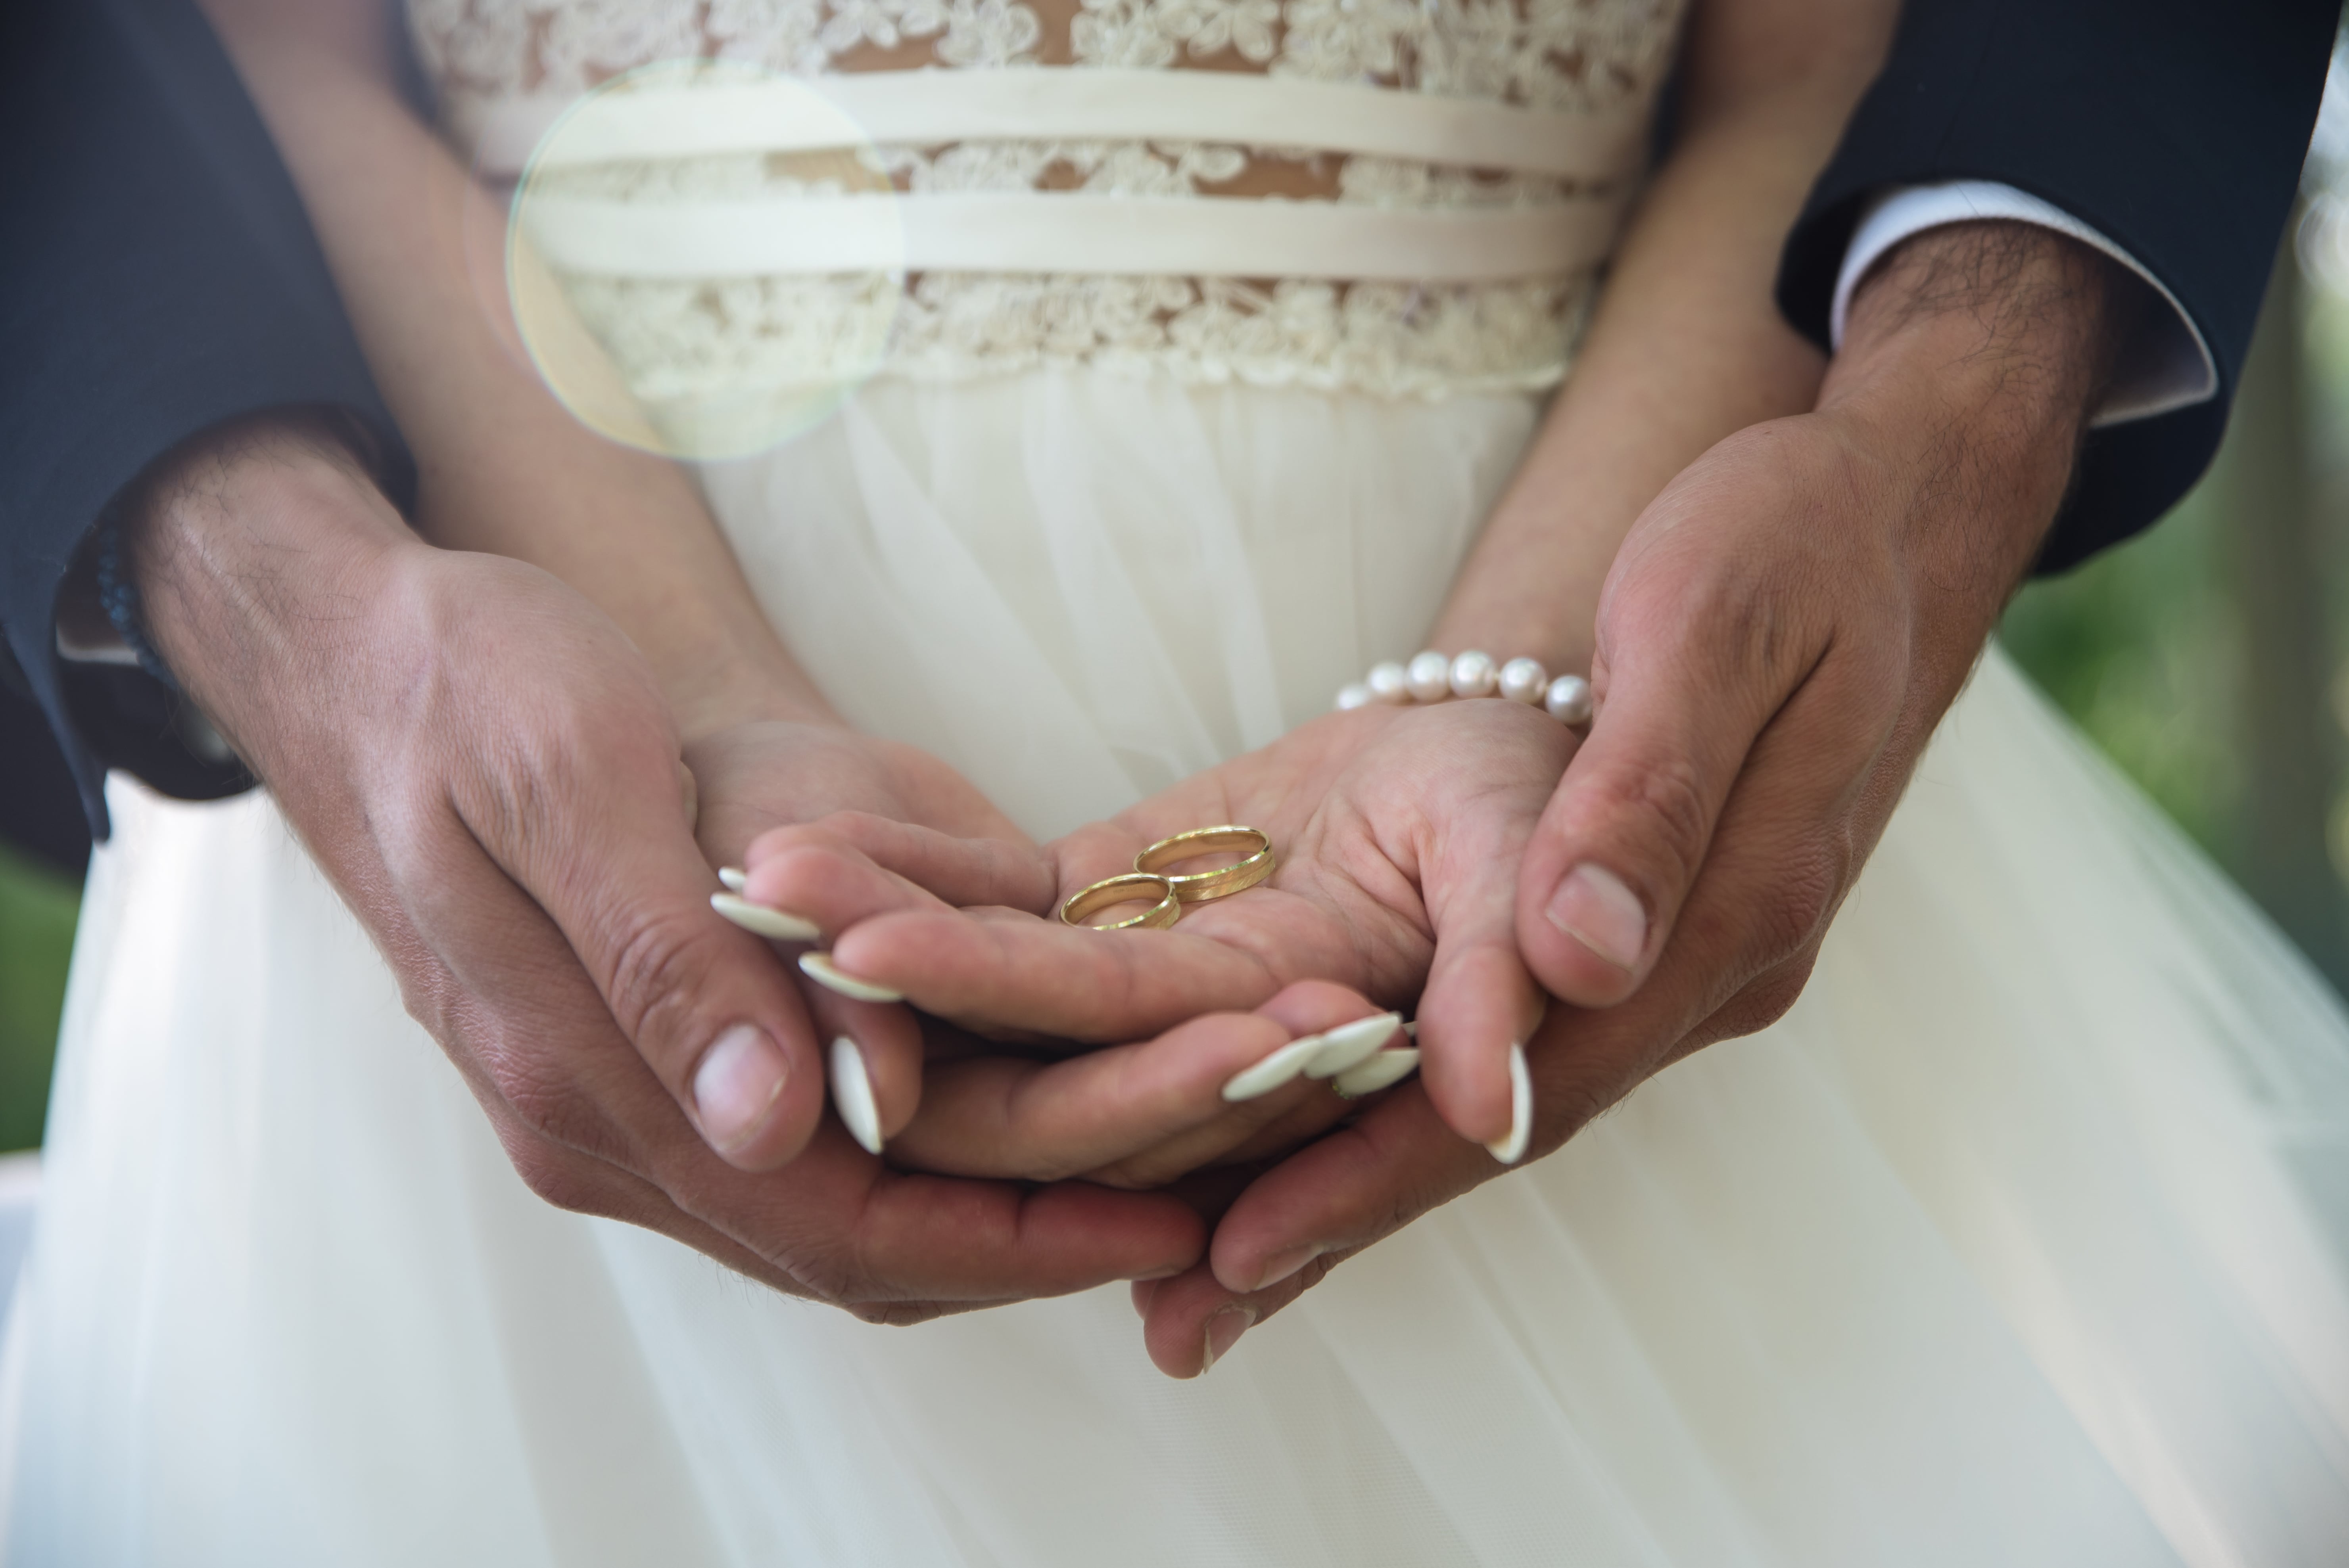 Новое замужество. Брак. Обручальные кольца на руках жениха и невесты. Свадьба руки с кольцами. Фото обручальных колец на руках жениха и невесты.